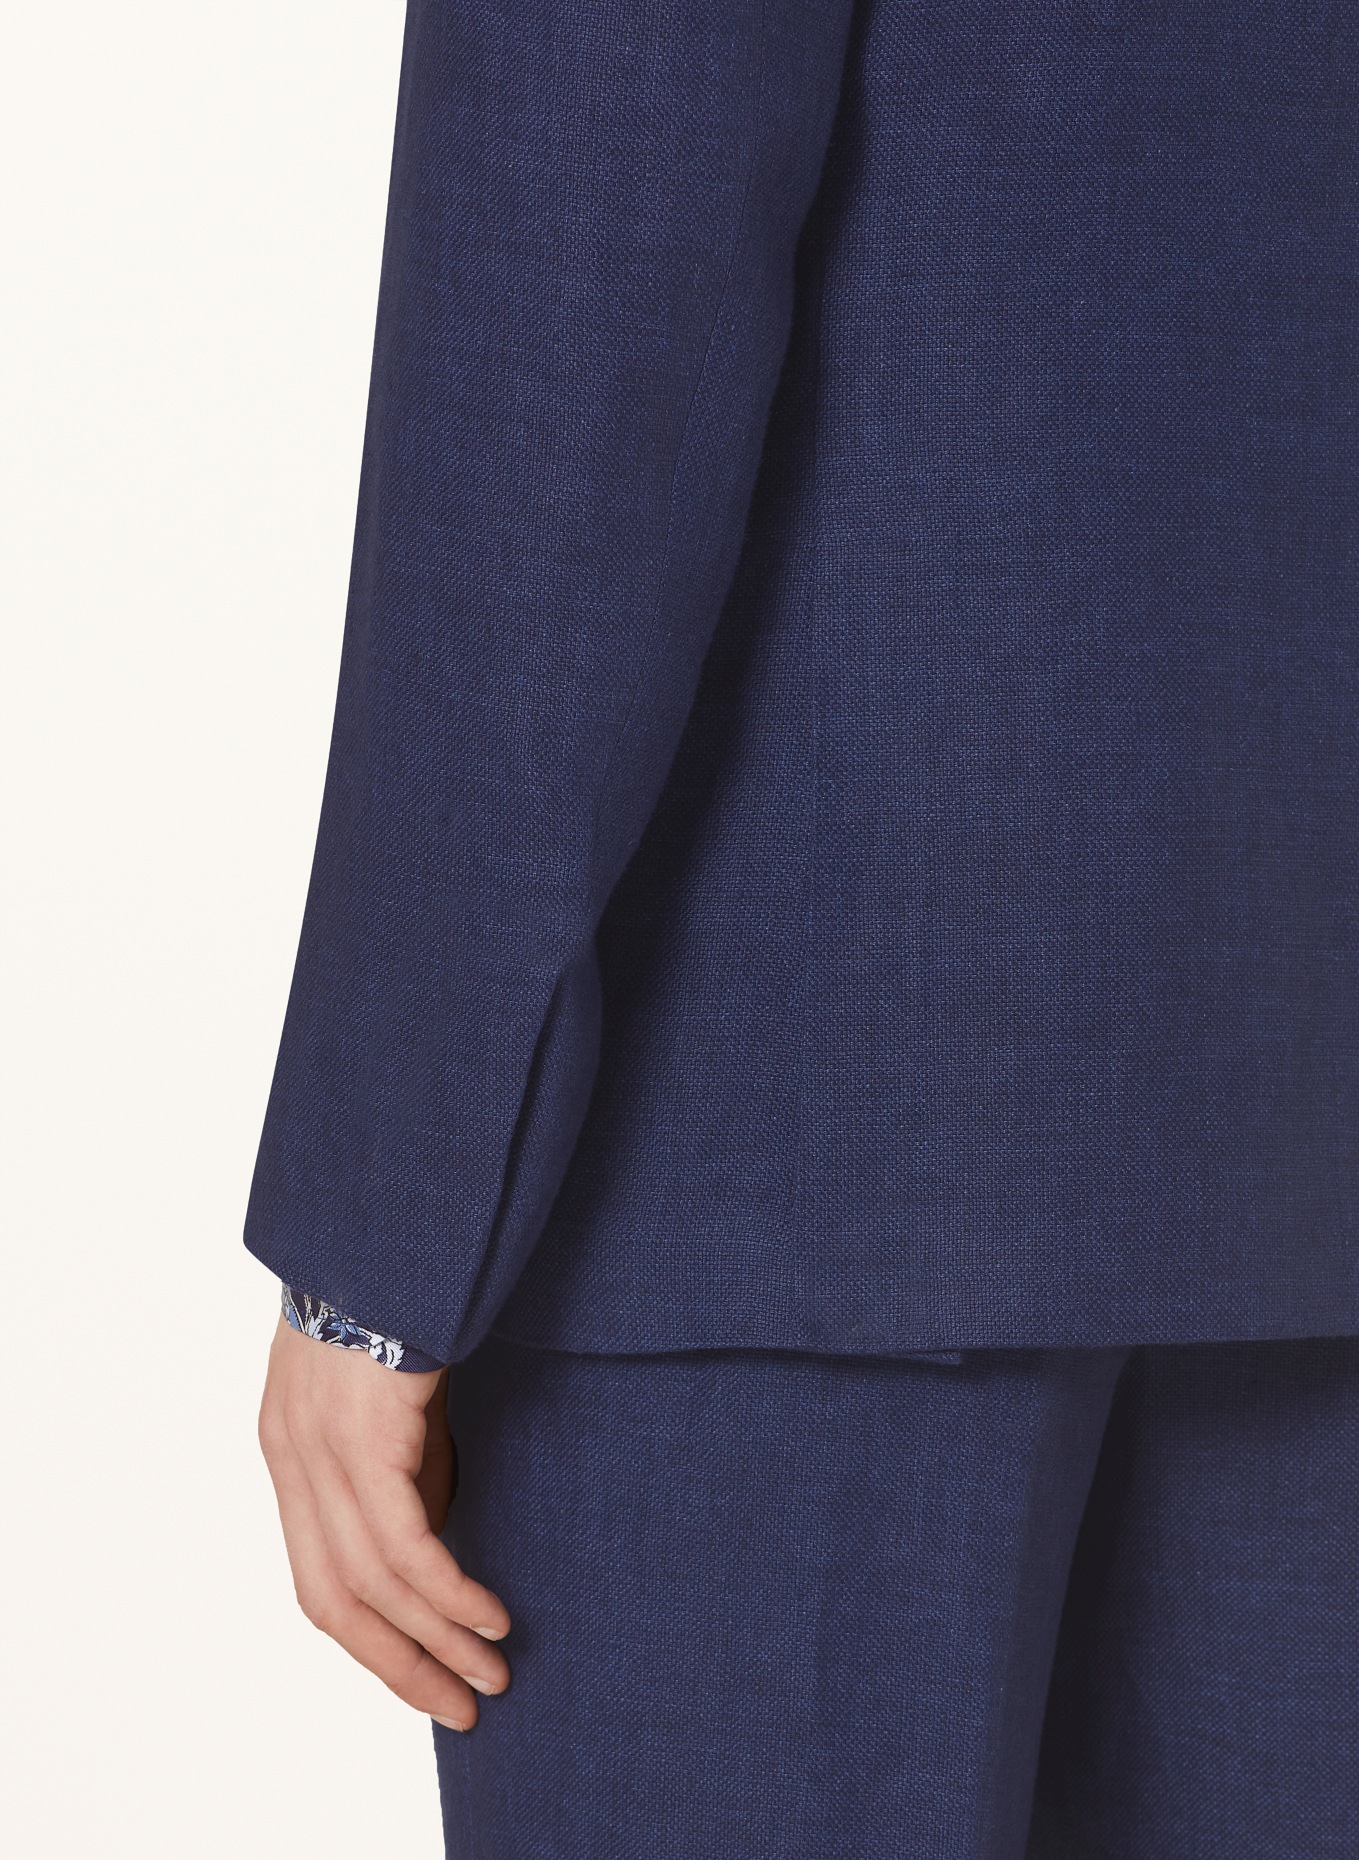 RALPH LAUREN PURPLE LABEL Suit jacket extra slim fit in linen, Color: DARK BLUE (Image 6)